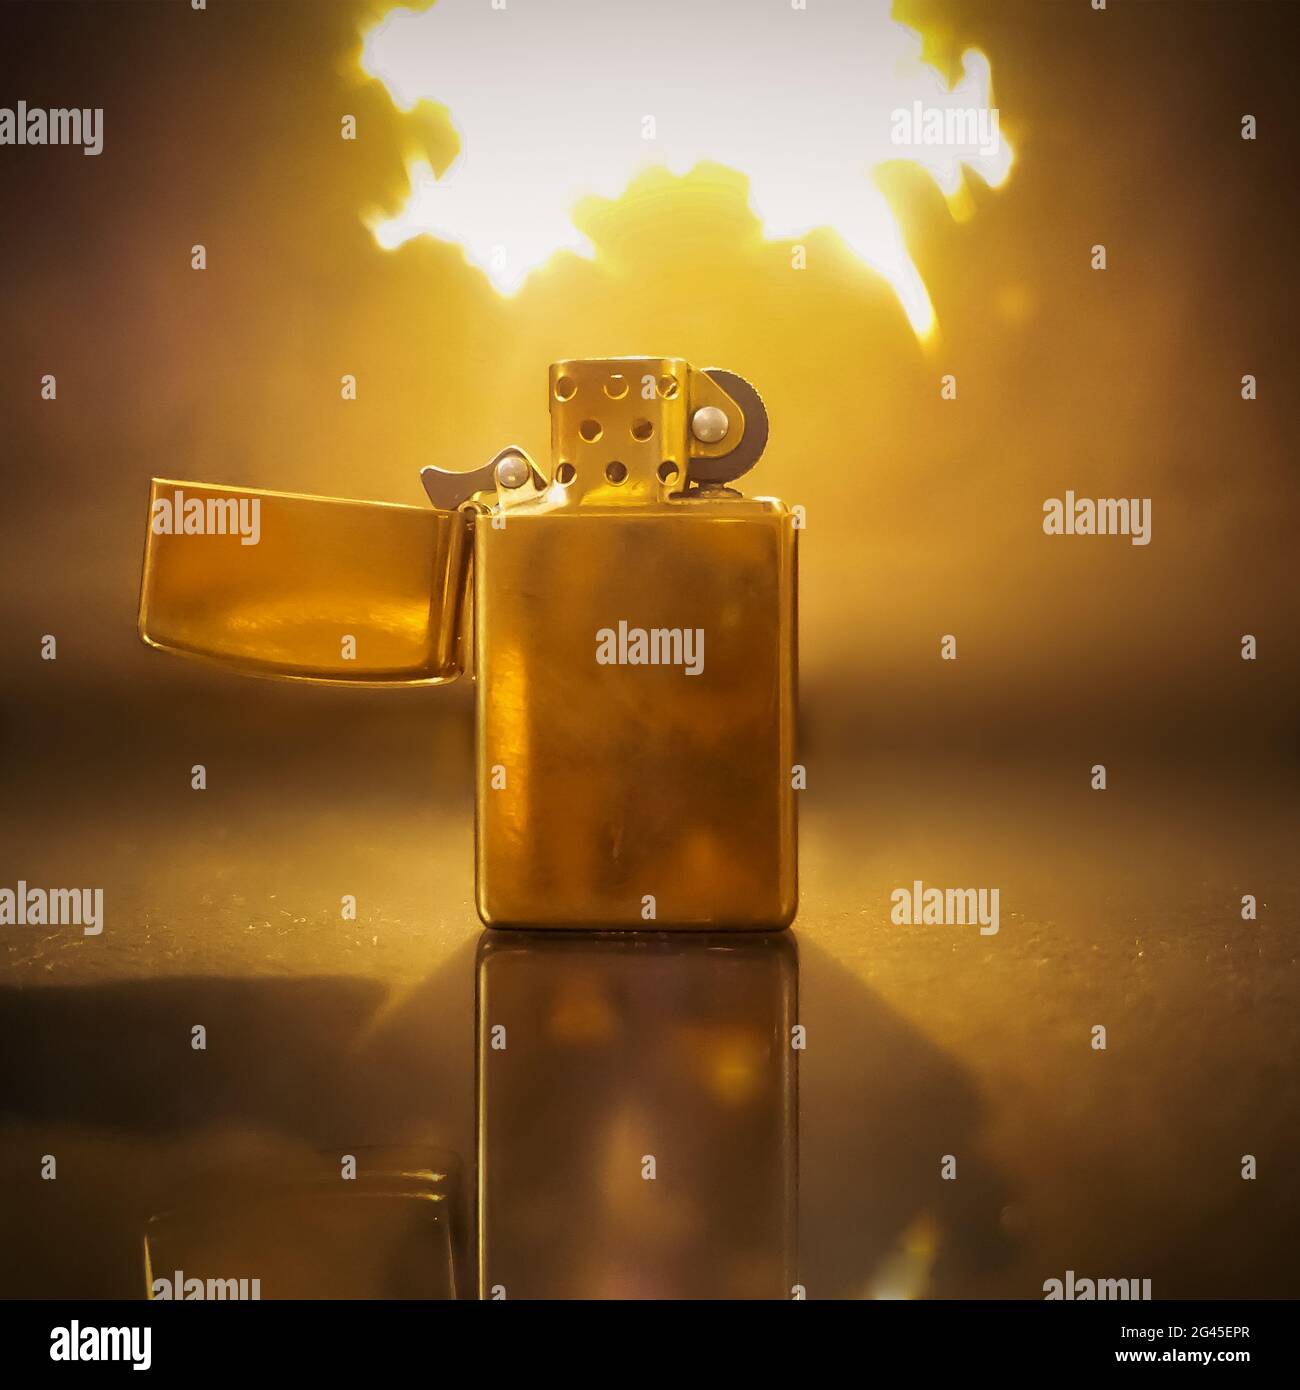 Ein Feuerzeug, aus dem das Feuer herauskommt Stockfotografie - Alamy